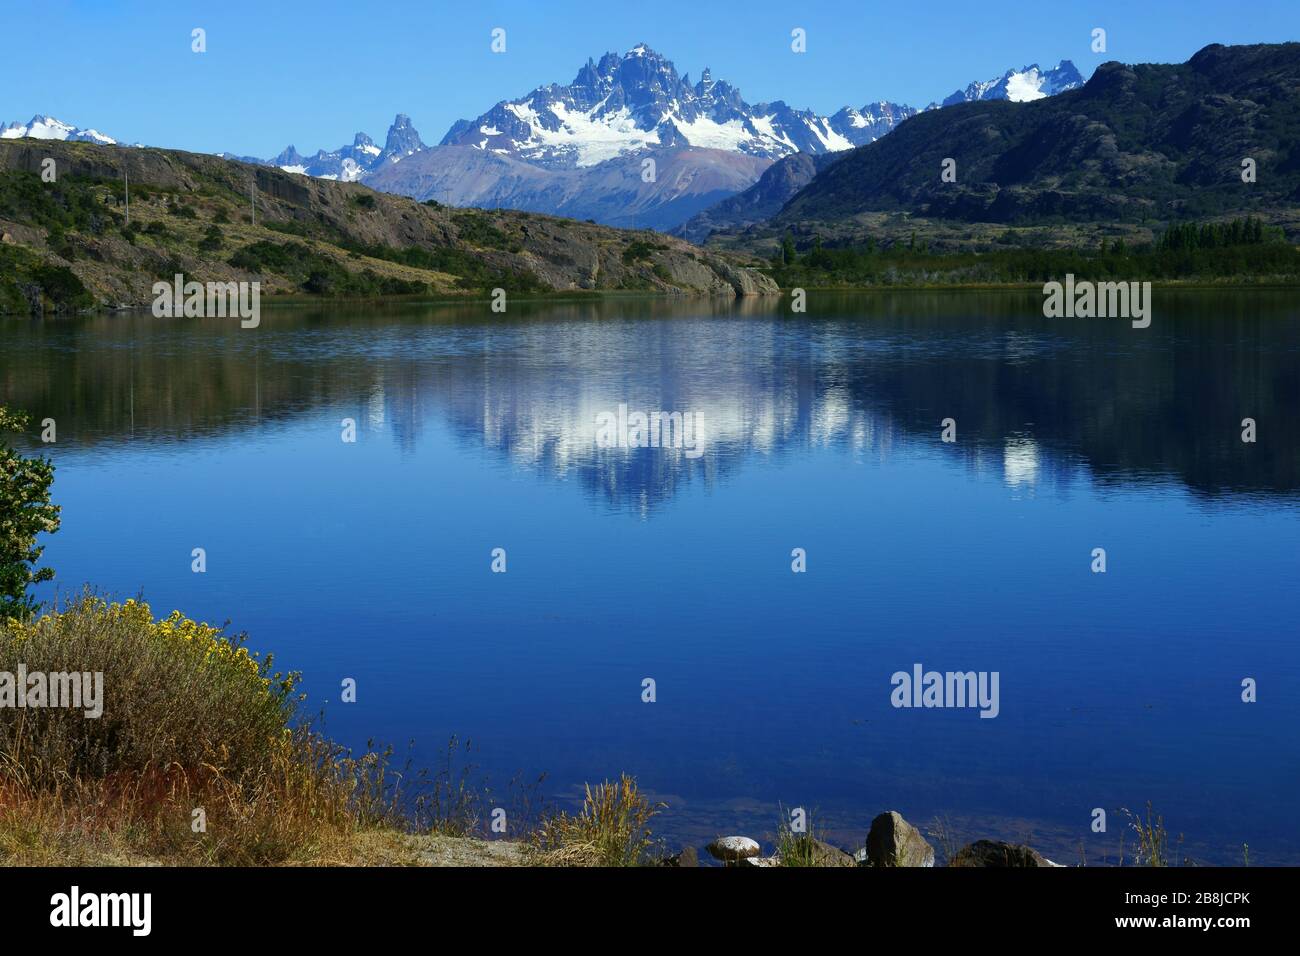 Cerro Castillo reflecting in lake, Cerro Castillo National Park, Patagonia, Chile Stock Photo